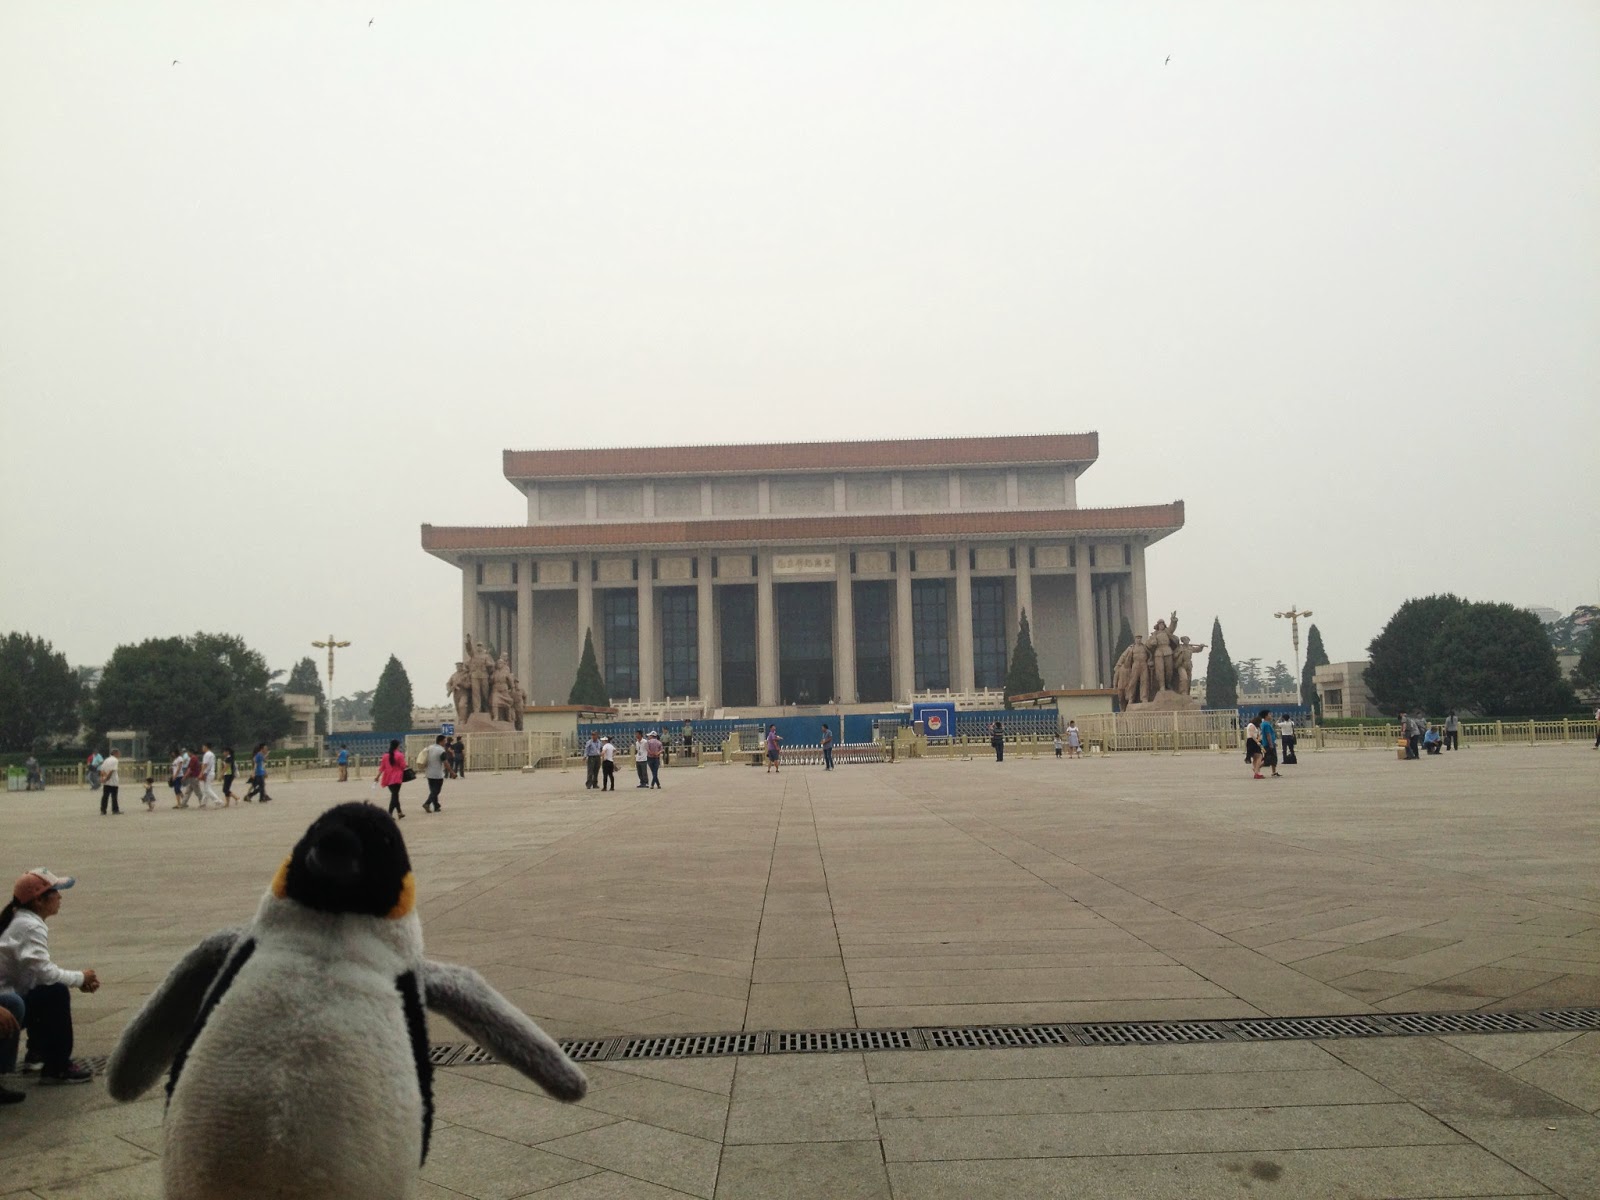 Penguin in front of the "Mao-soleum"